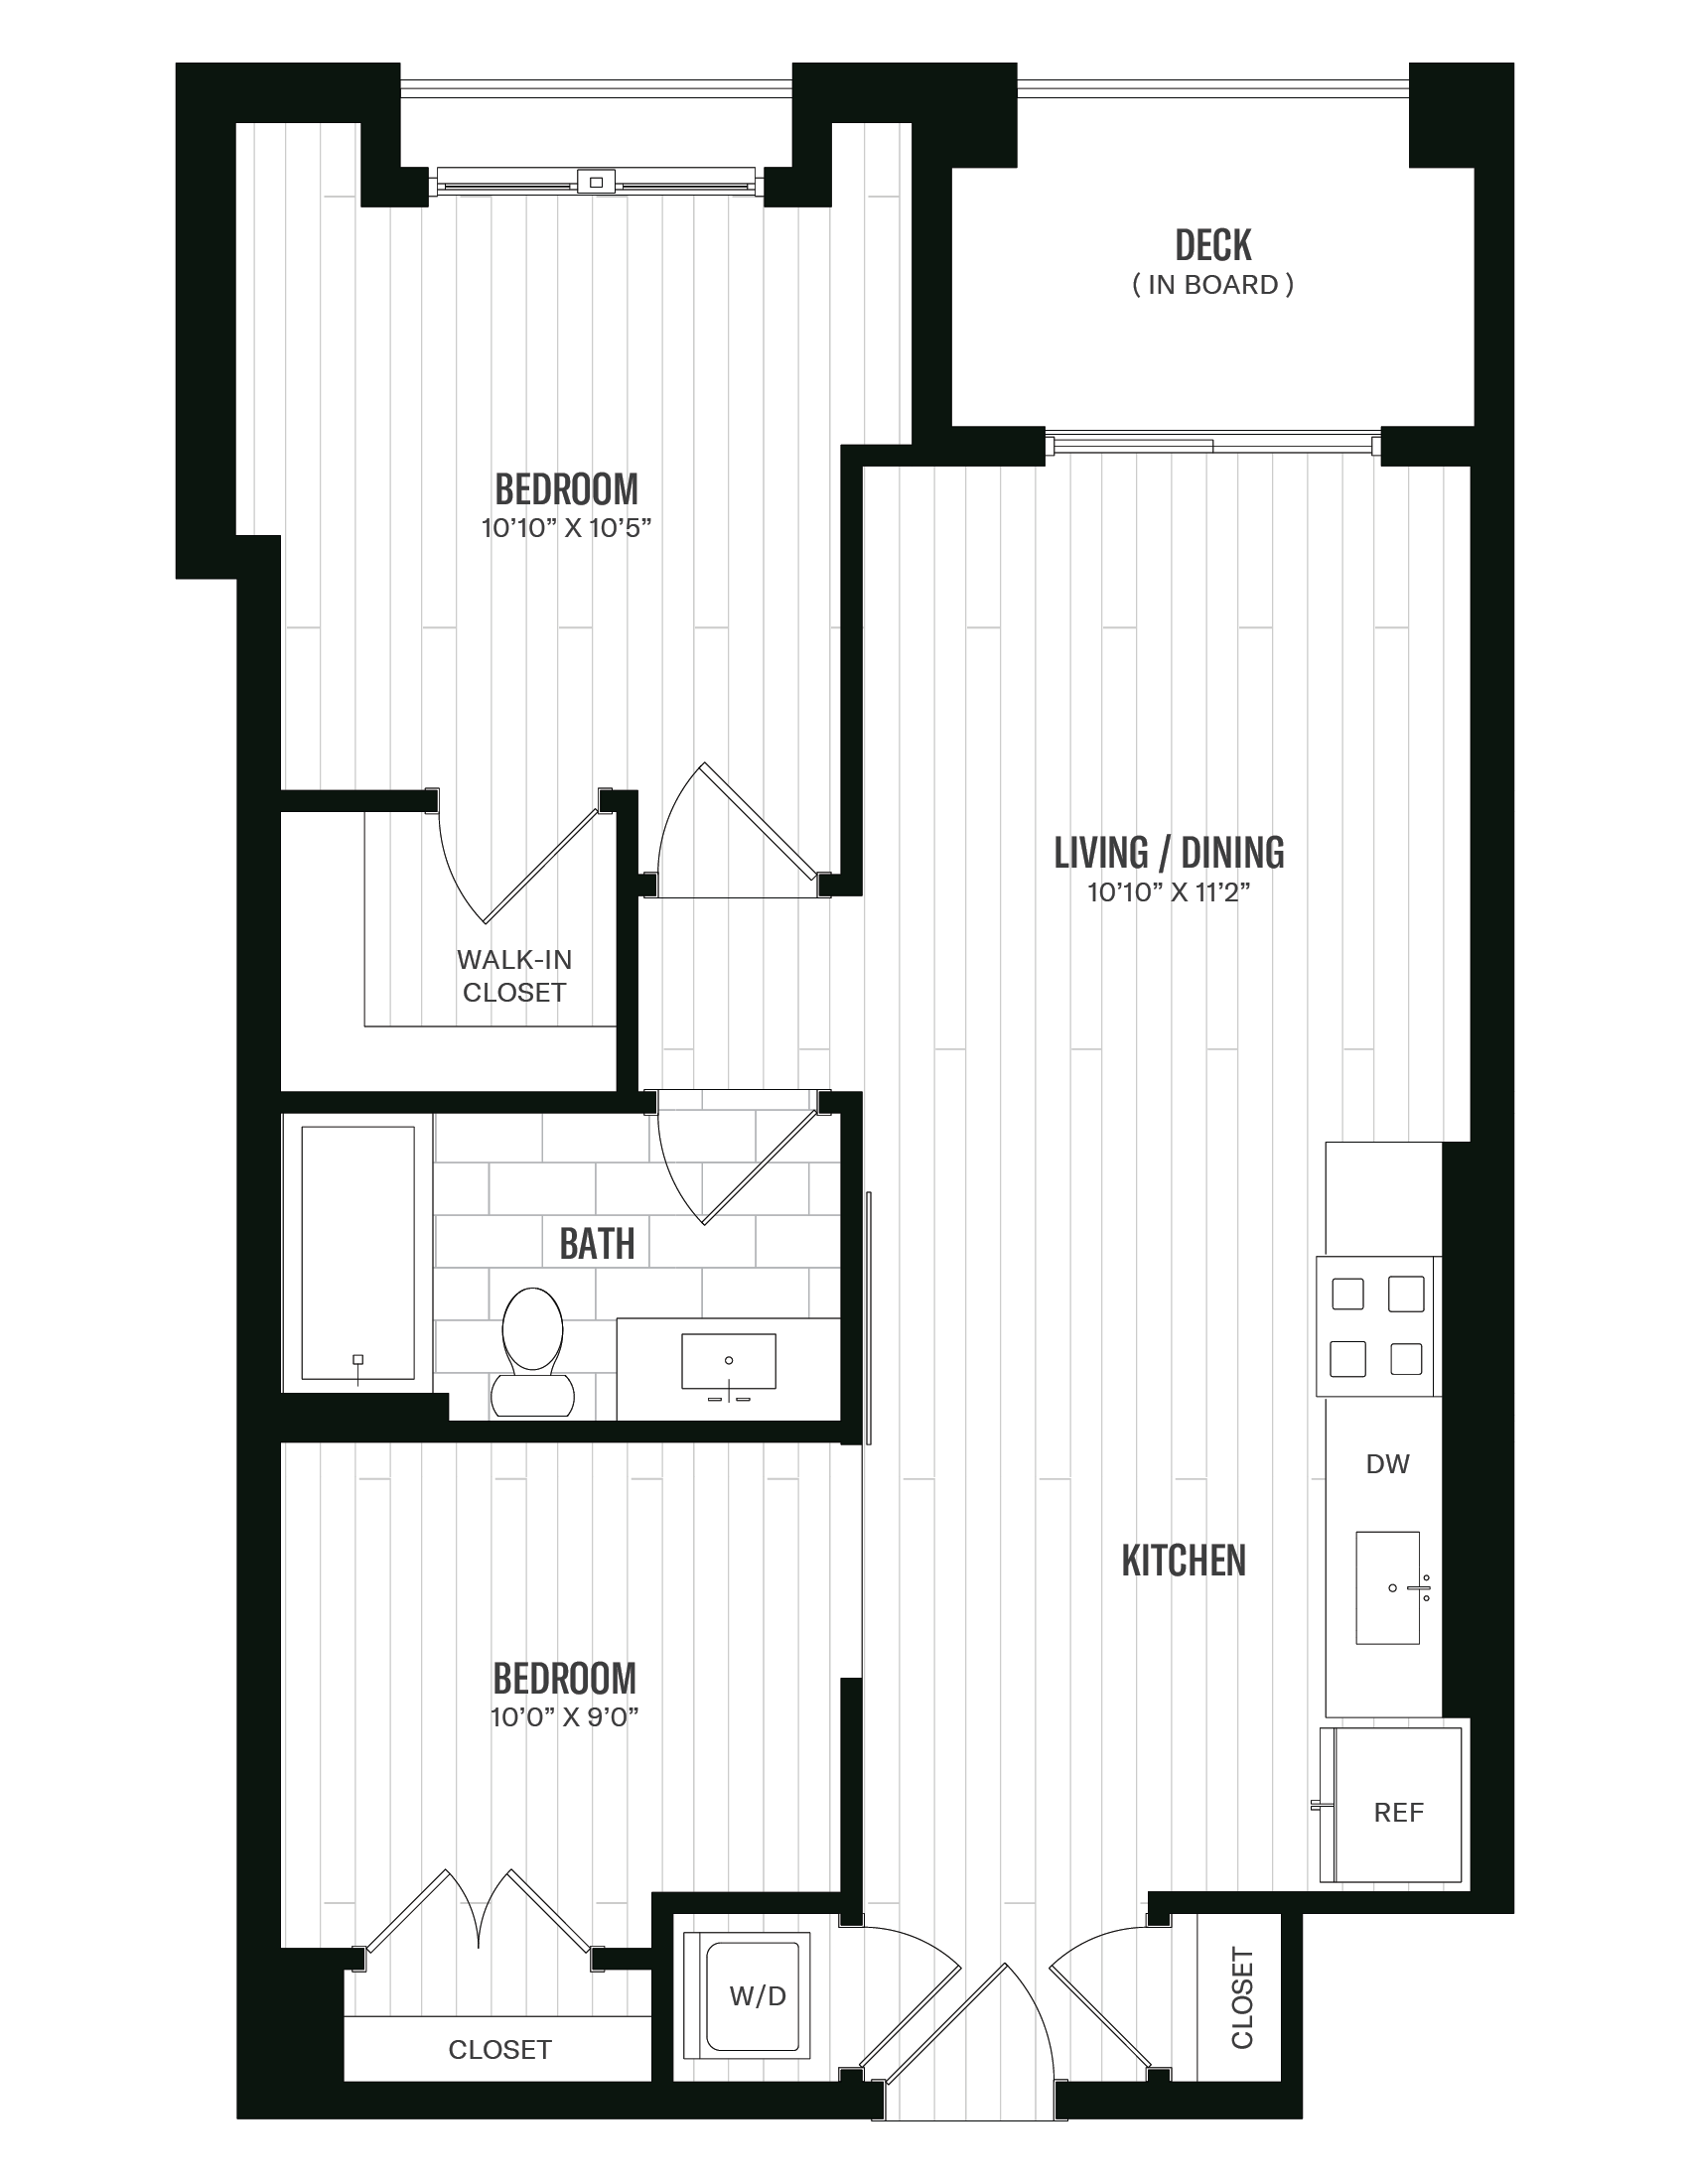 Floorplan image of unit 346